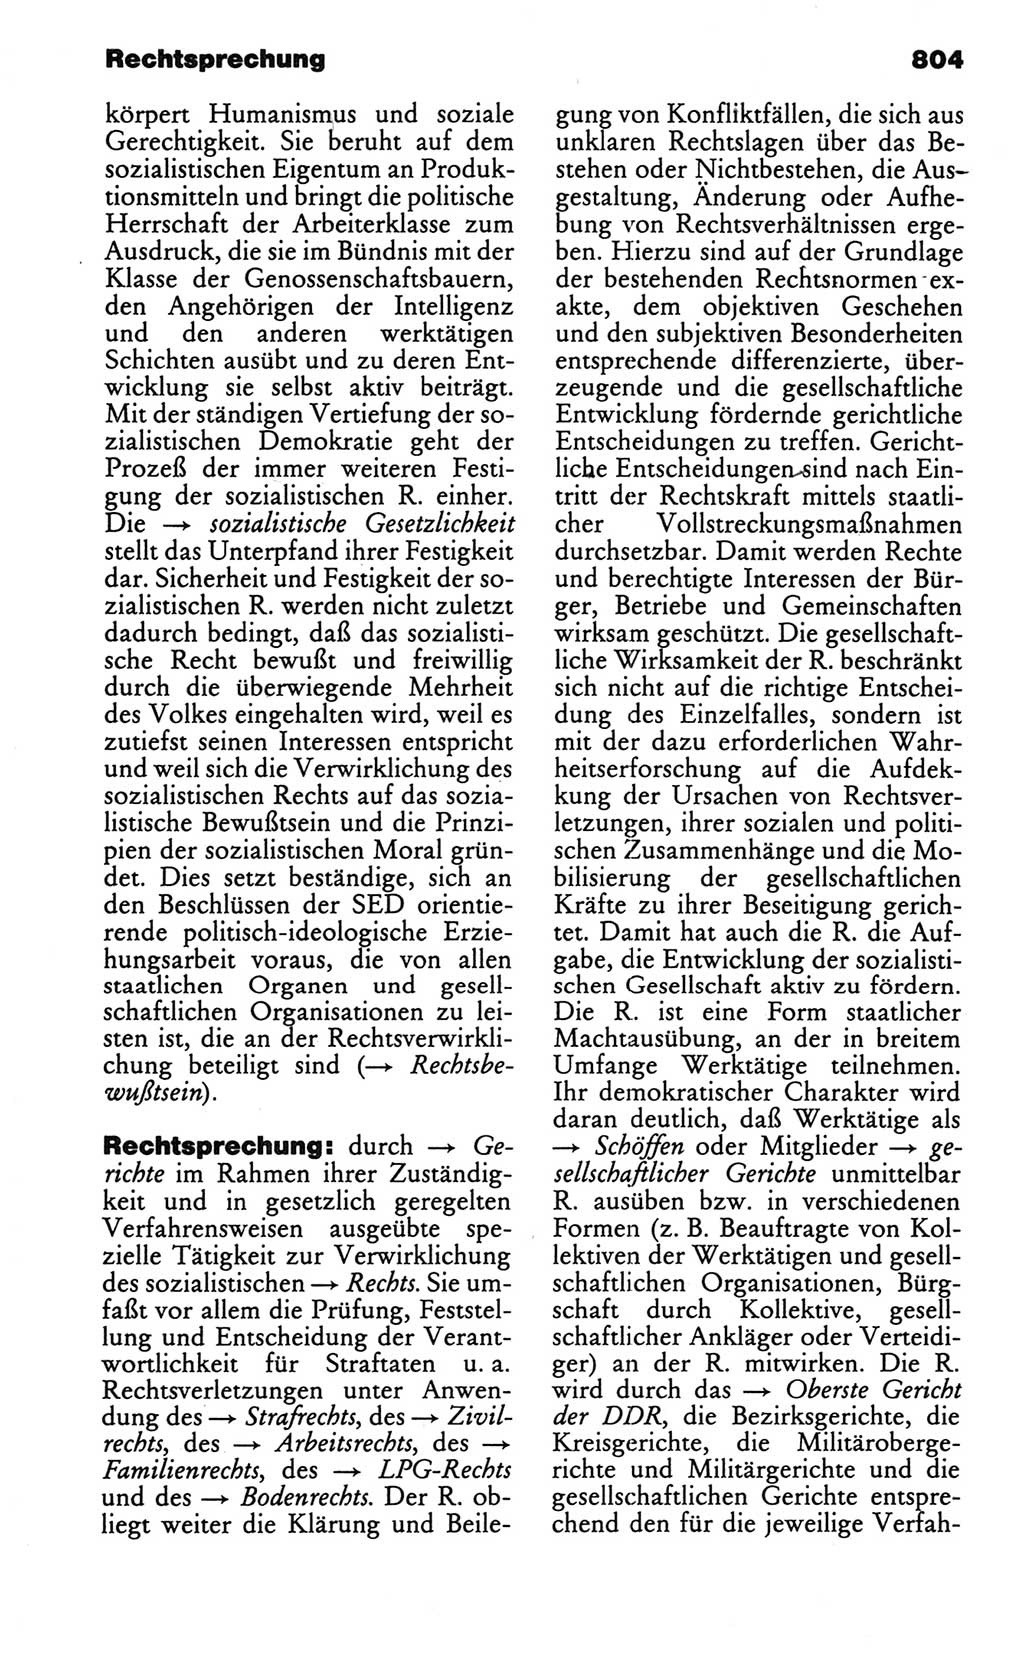 Kleines politisches Wörterbuch [Deutsche Demokratische Republik (DDR)] 1986, Seite 804 (Kl. pol. Wb. DDR 1986, S. 804)